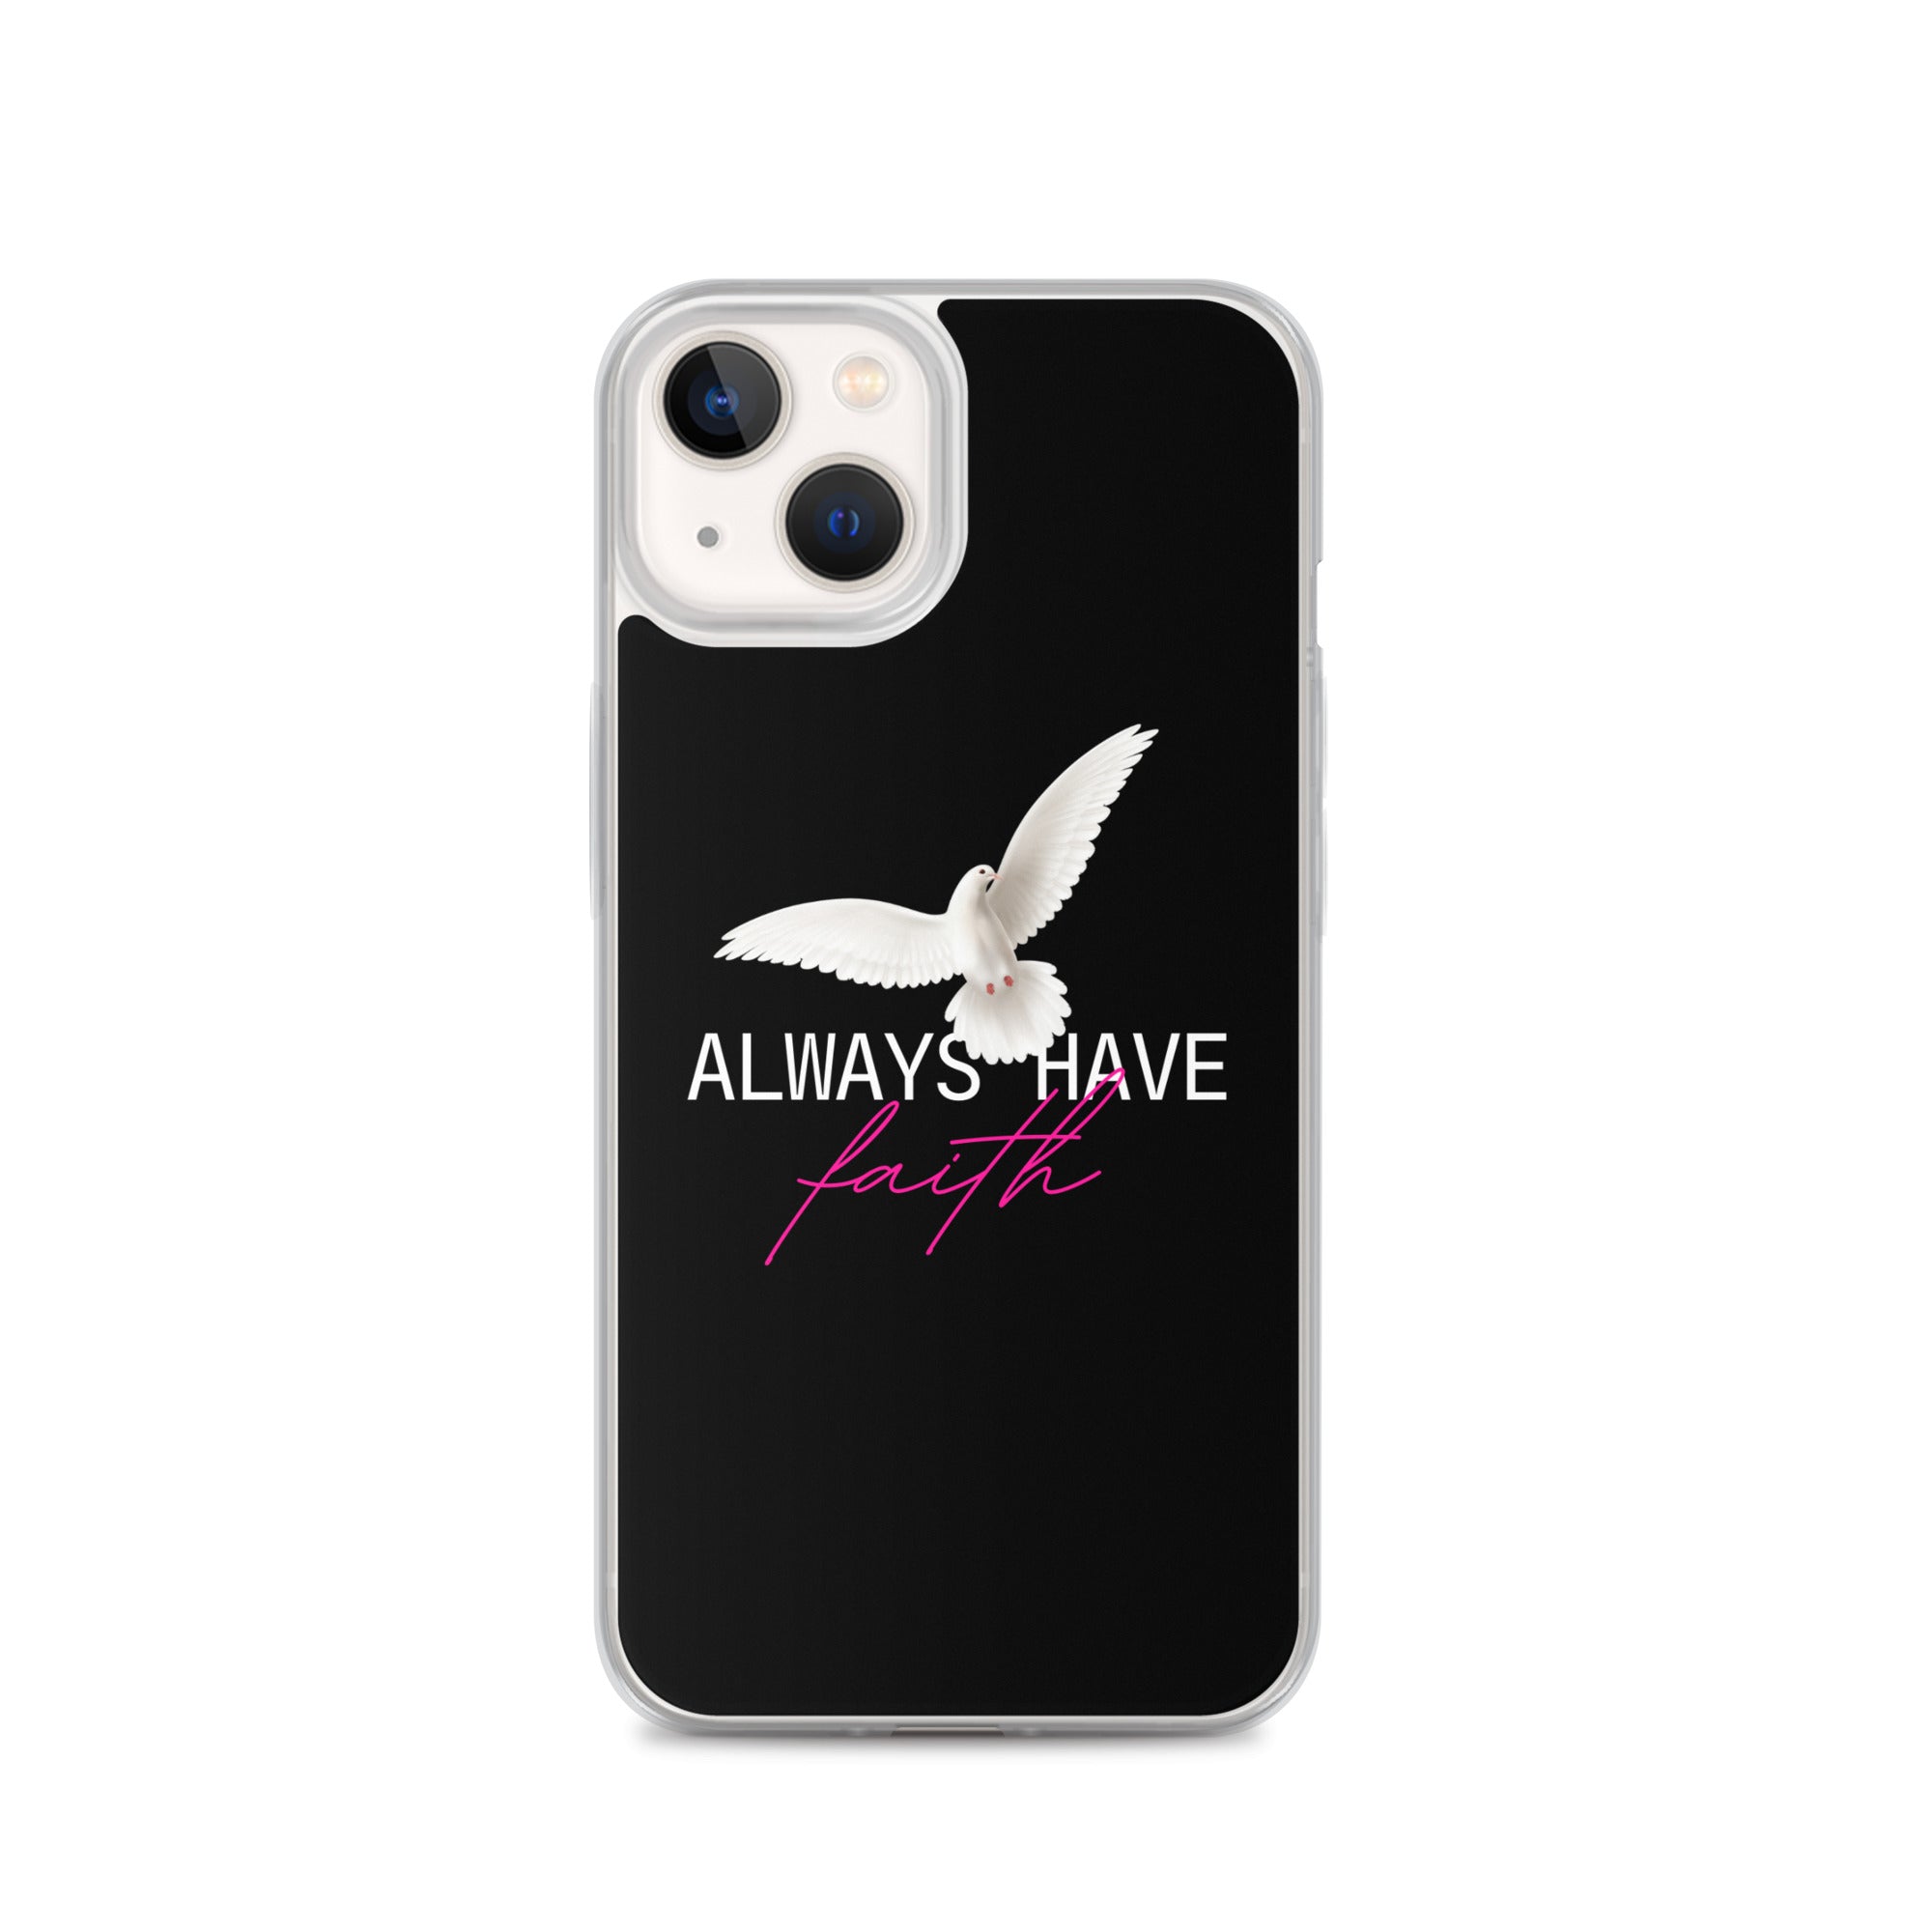 iPhone Case - Always have faith